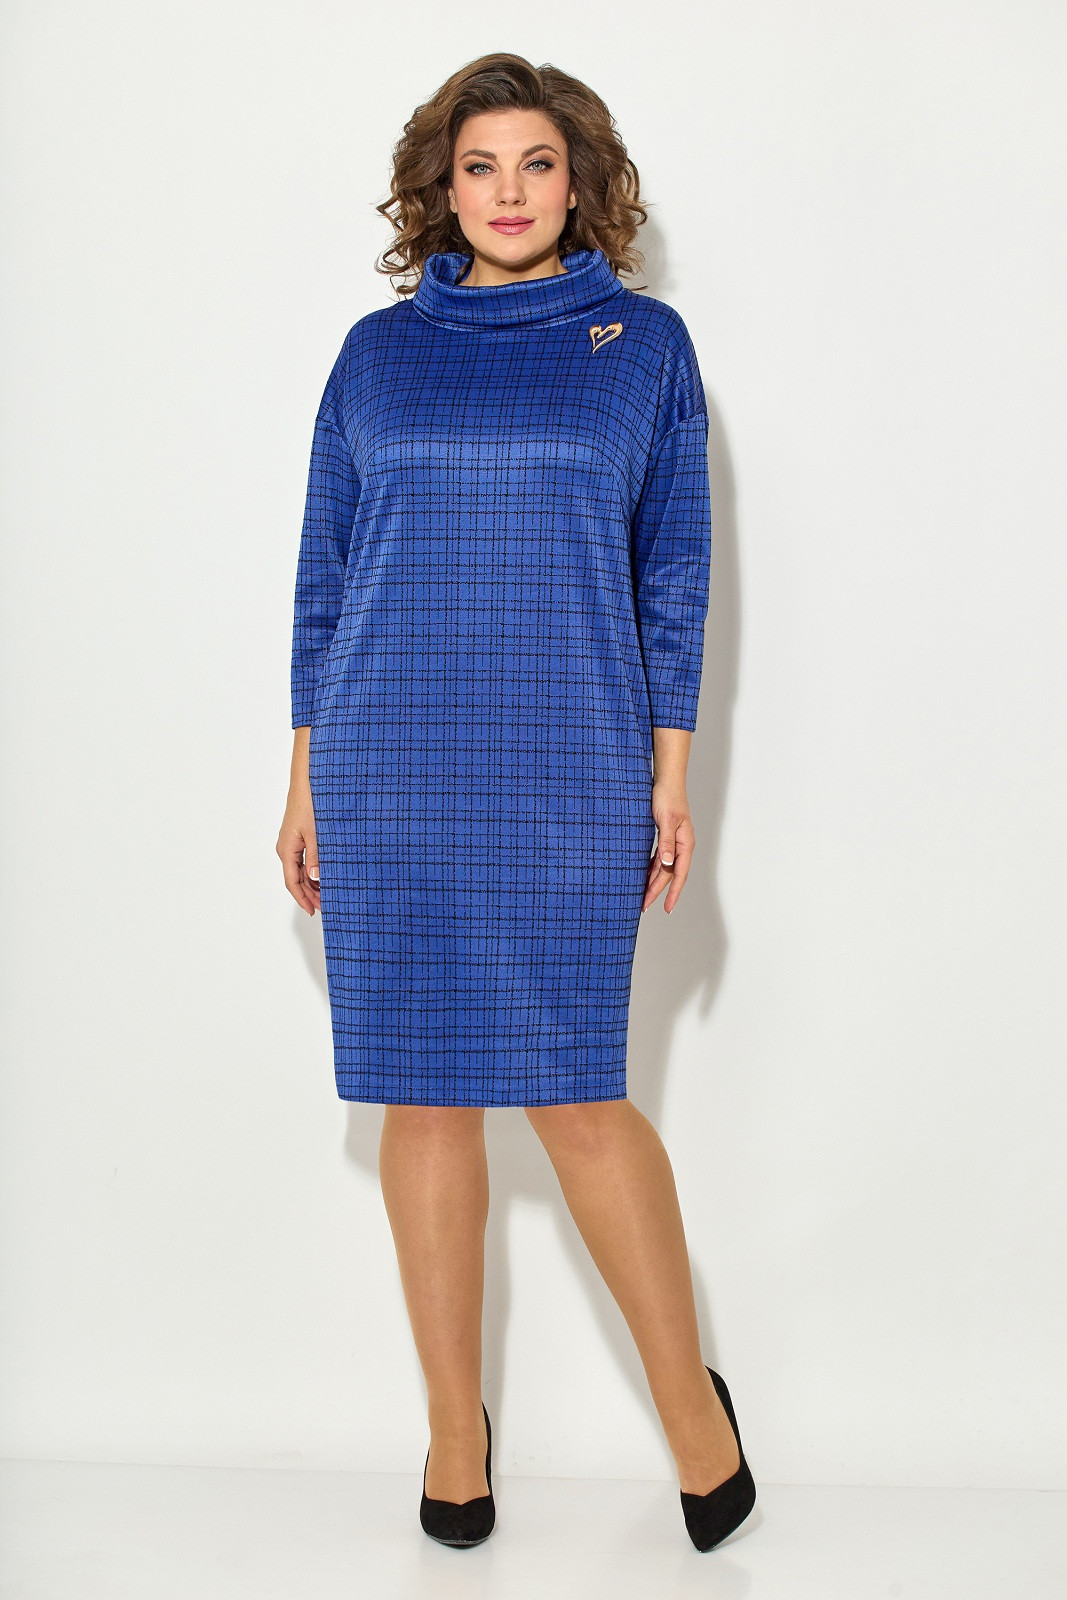 Платье Кокетка и К 983-3 синий